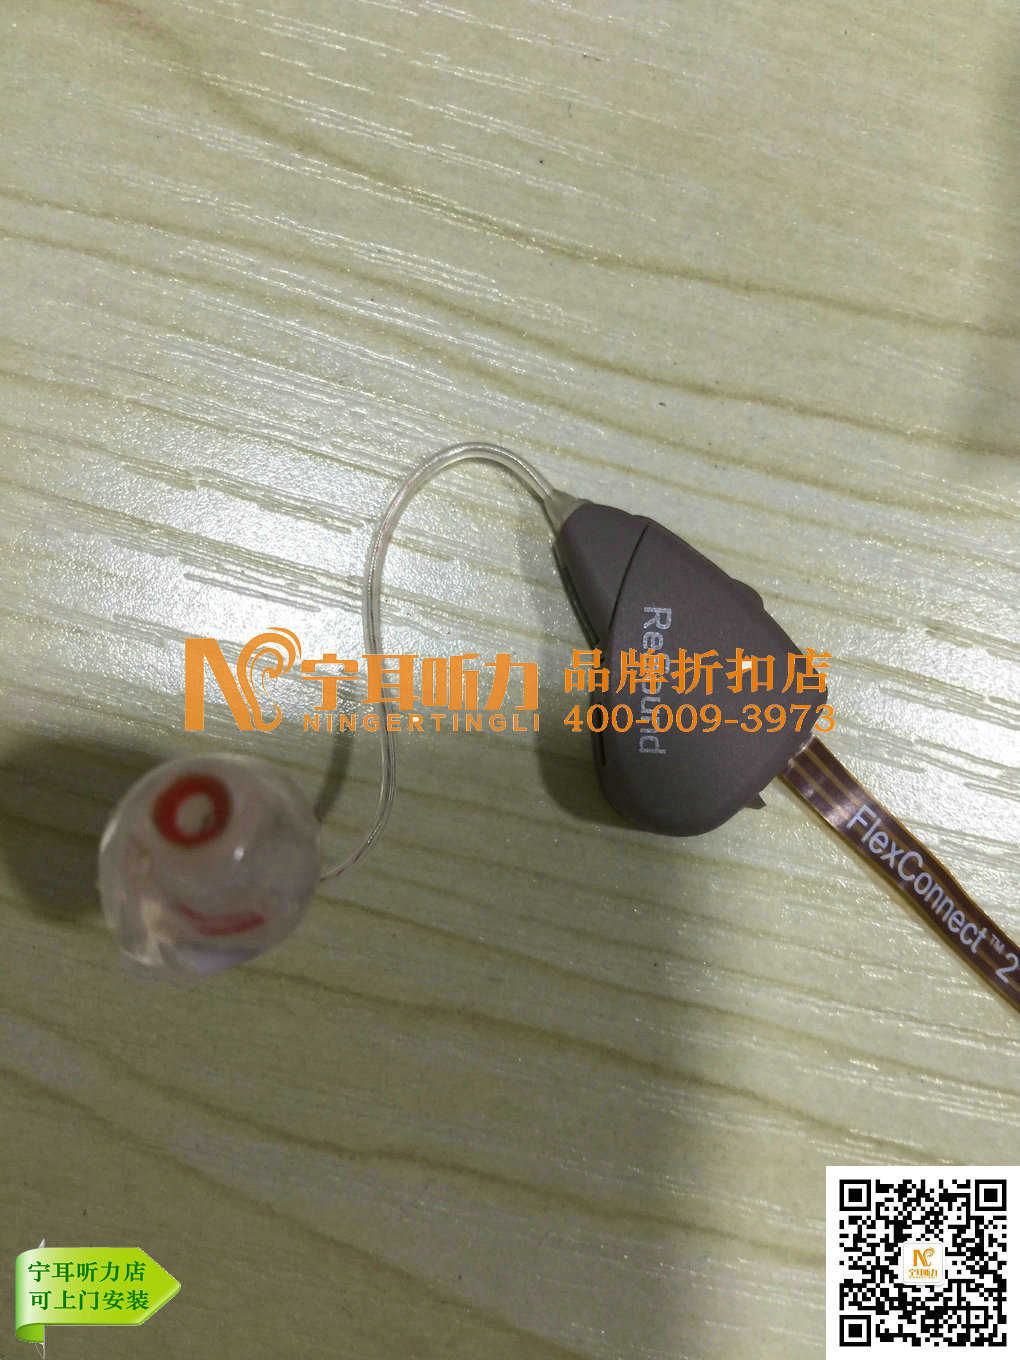 上海嘉定儿童助听器出售先试后买！